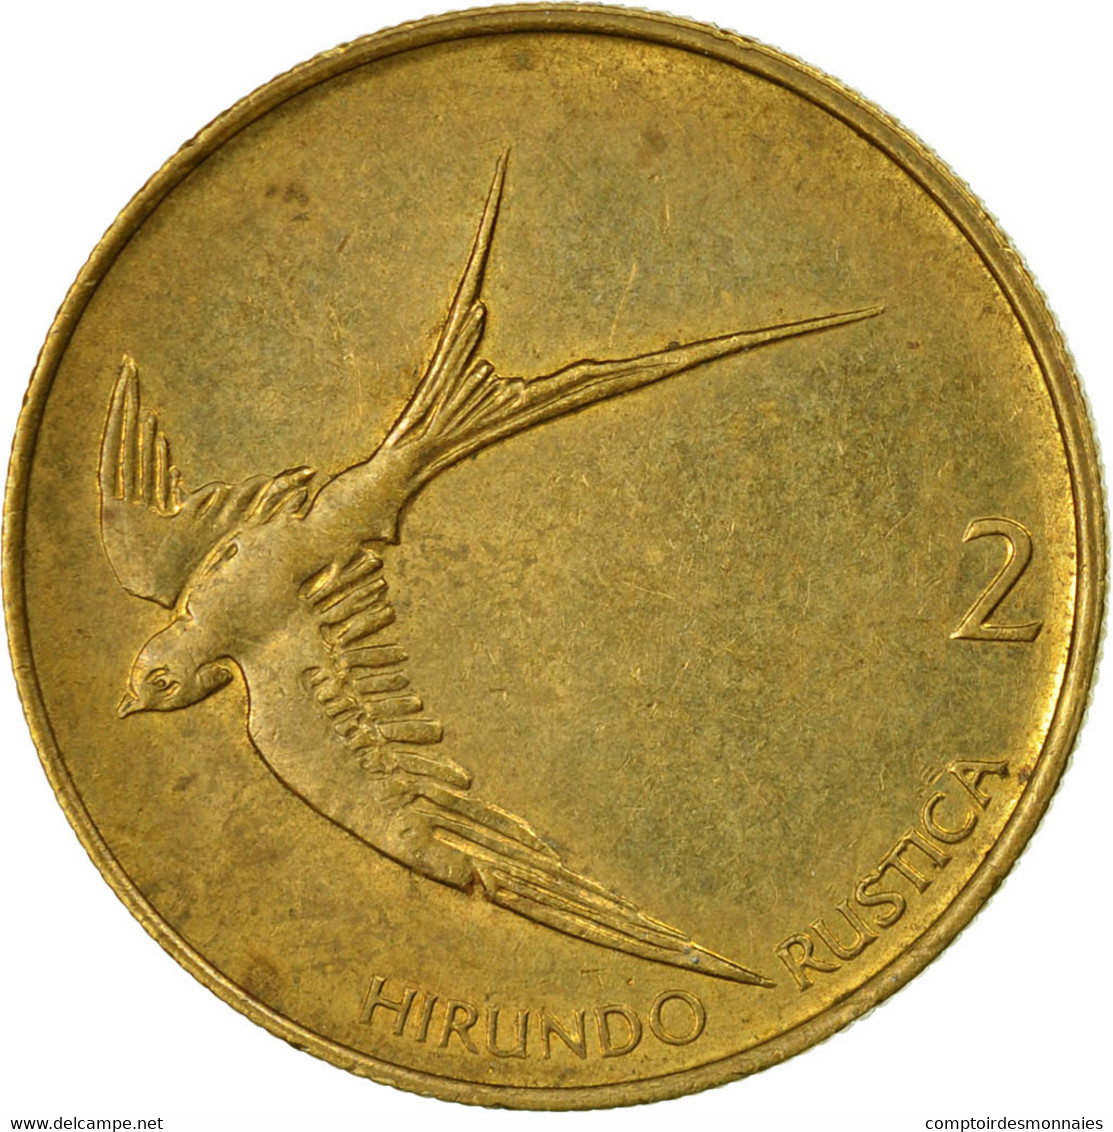 Monnaie, Slovénie, 2 Tolarja, 1993, TB+, Nickel-brass, KM:5 - Slovénie